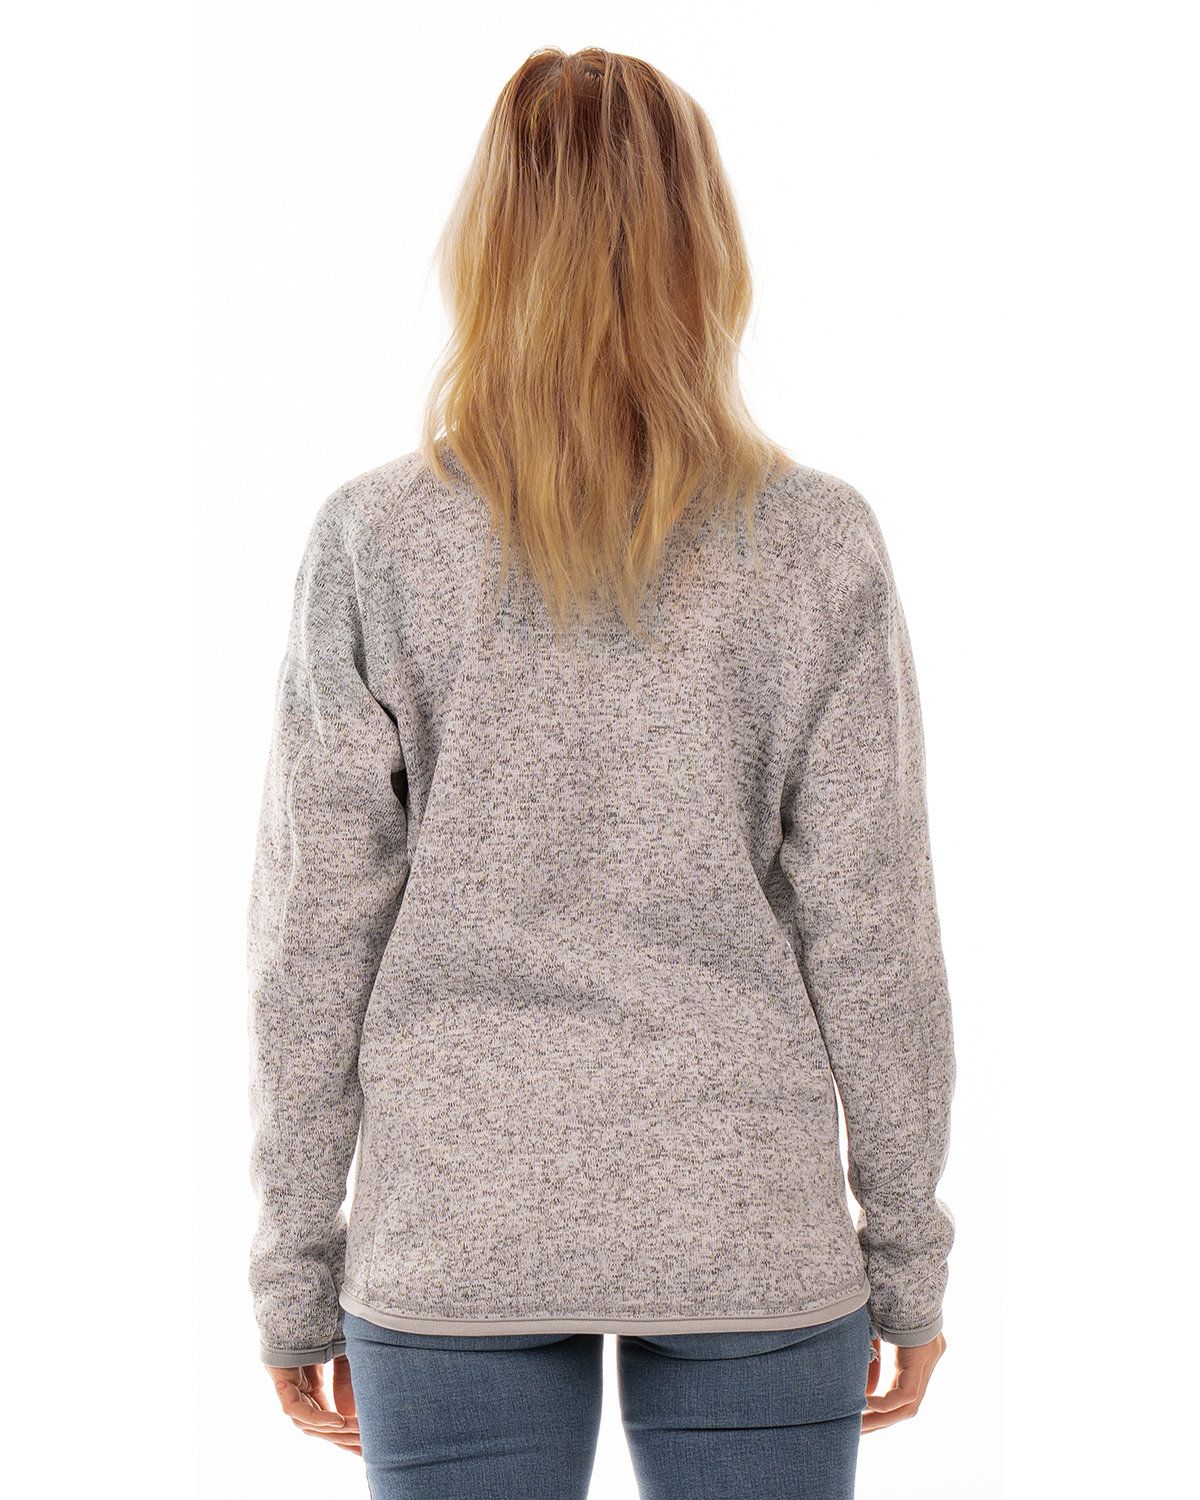 'Burnside 5901 Ladies Sweater Knit Fleece Jacket'